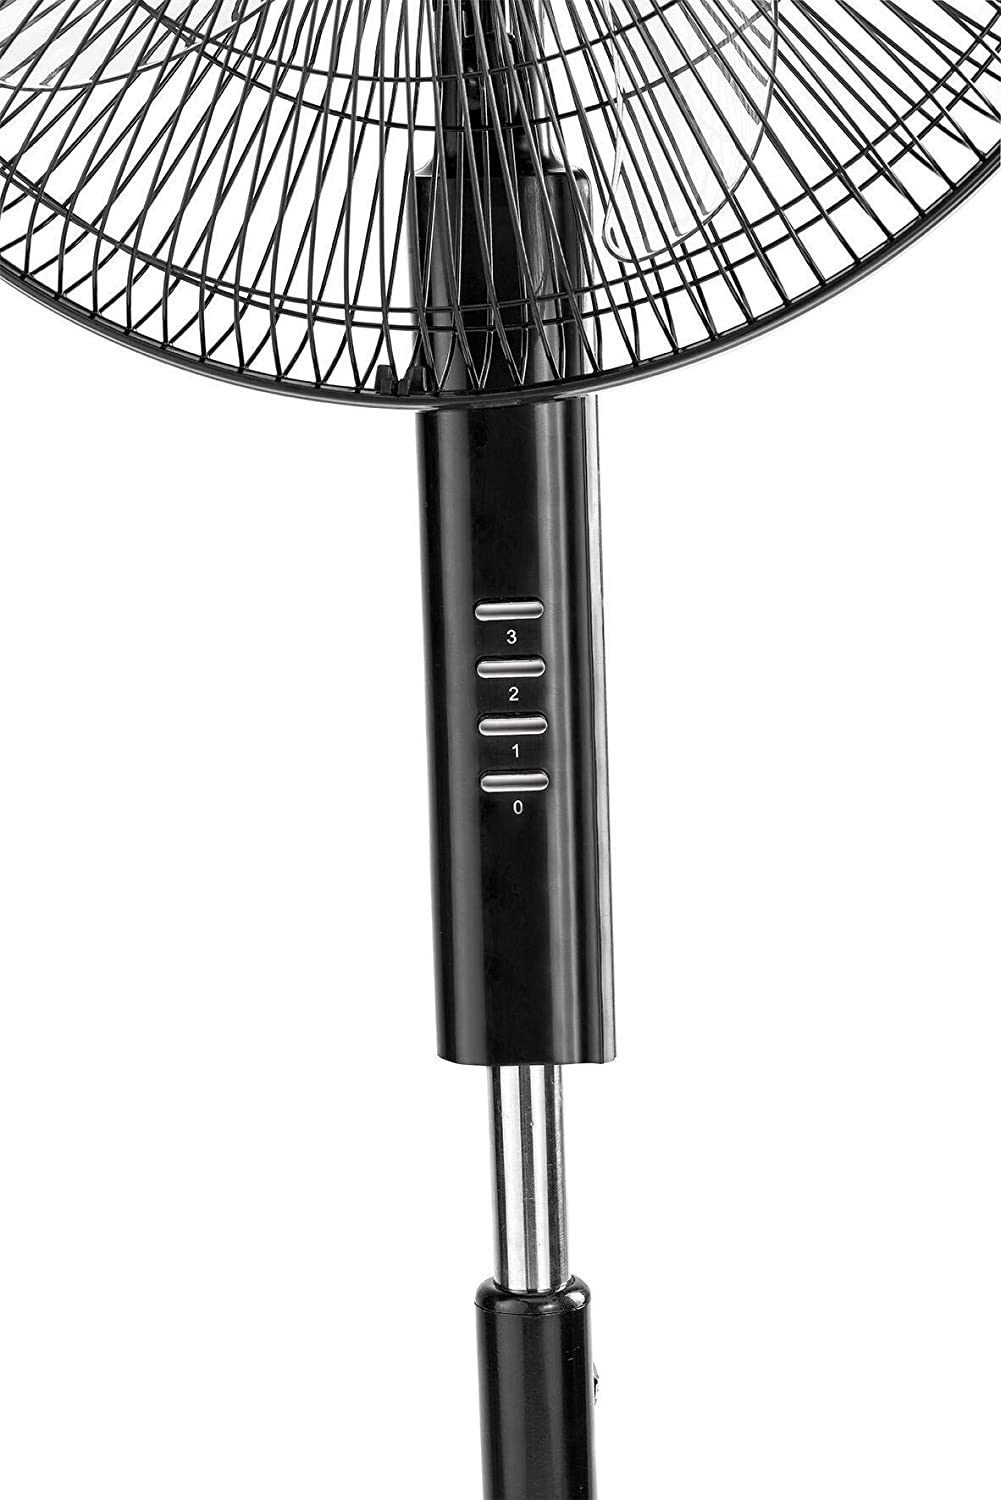 BLACK+DECKER 60W Stand Fan 16 Inch Fan Diameter, 90° Wide Swing 3 Speeds مروحة بلاك اند ديكير 16 انش العمودية